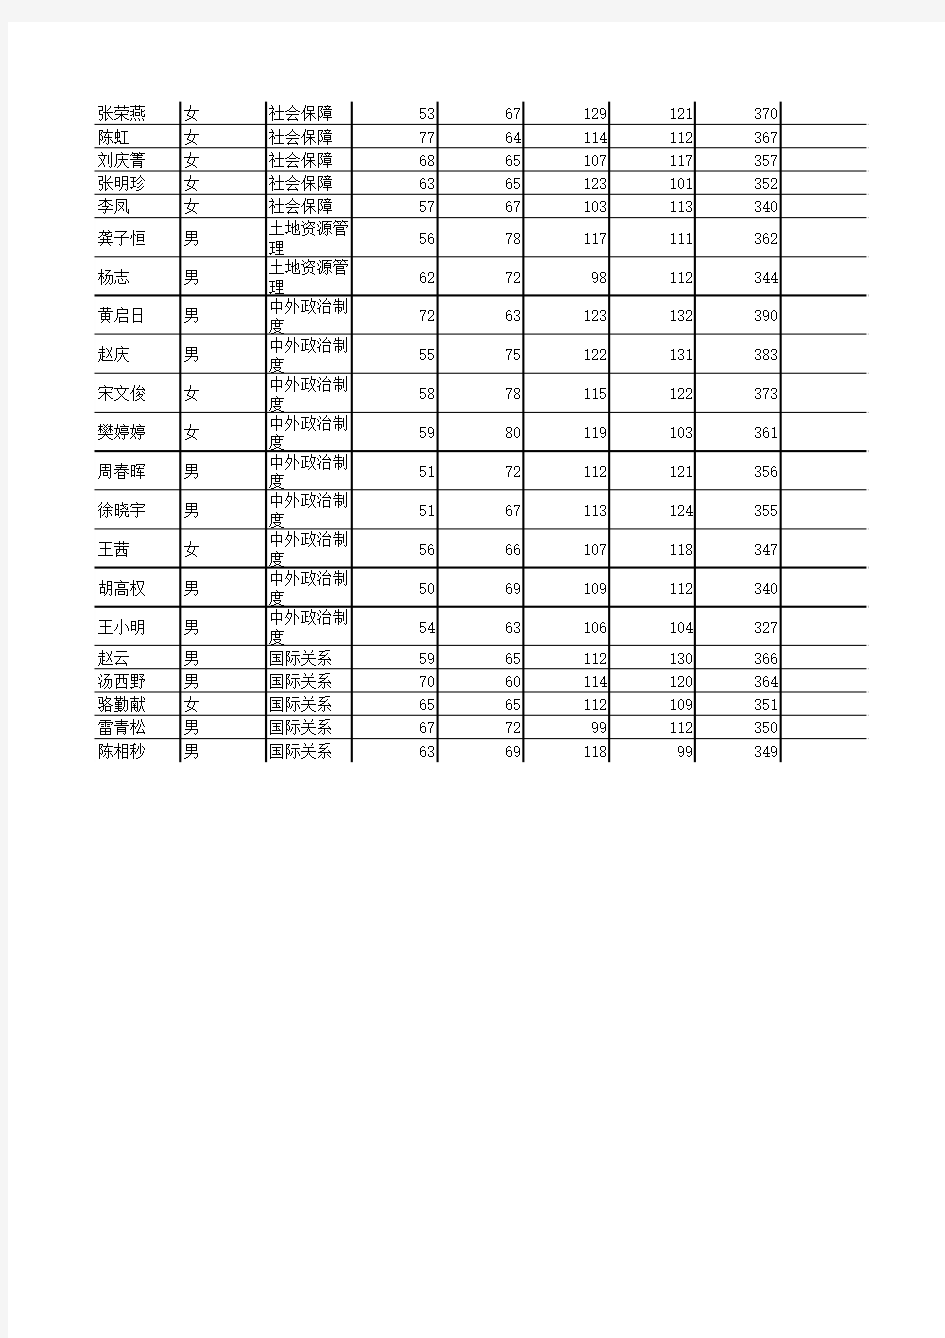 浙江大学行政管理2009年复试名单和成绩